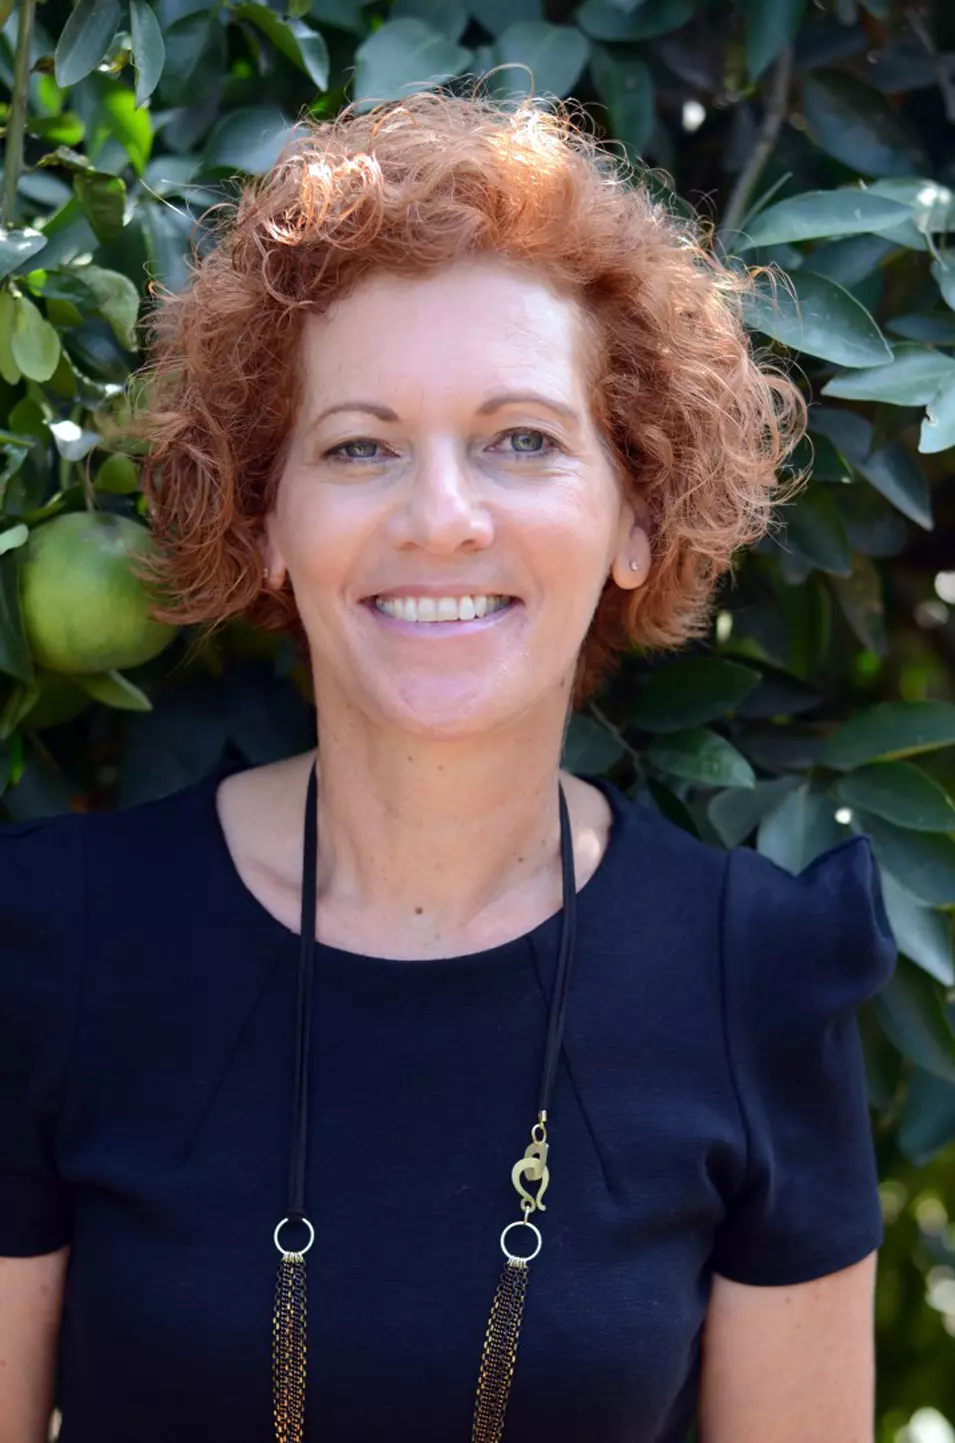 ענת פרידמן-קולס, מנהלת השיווק של לקט ישראל